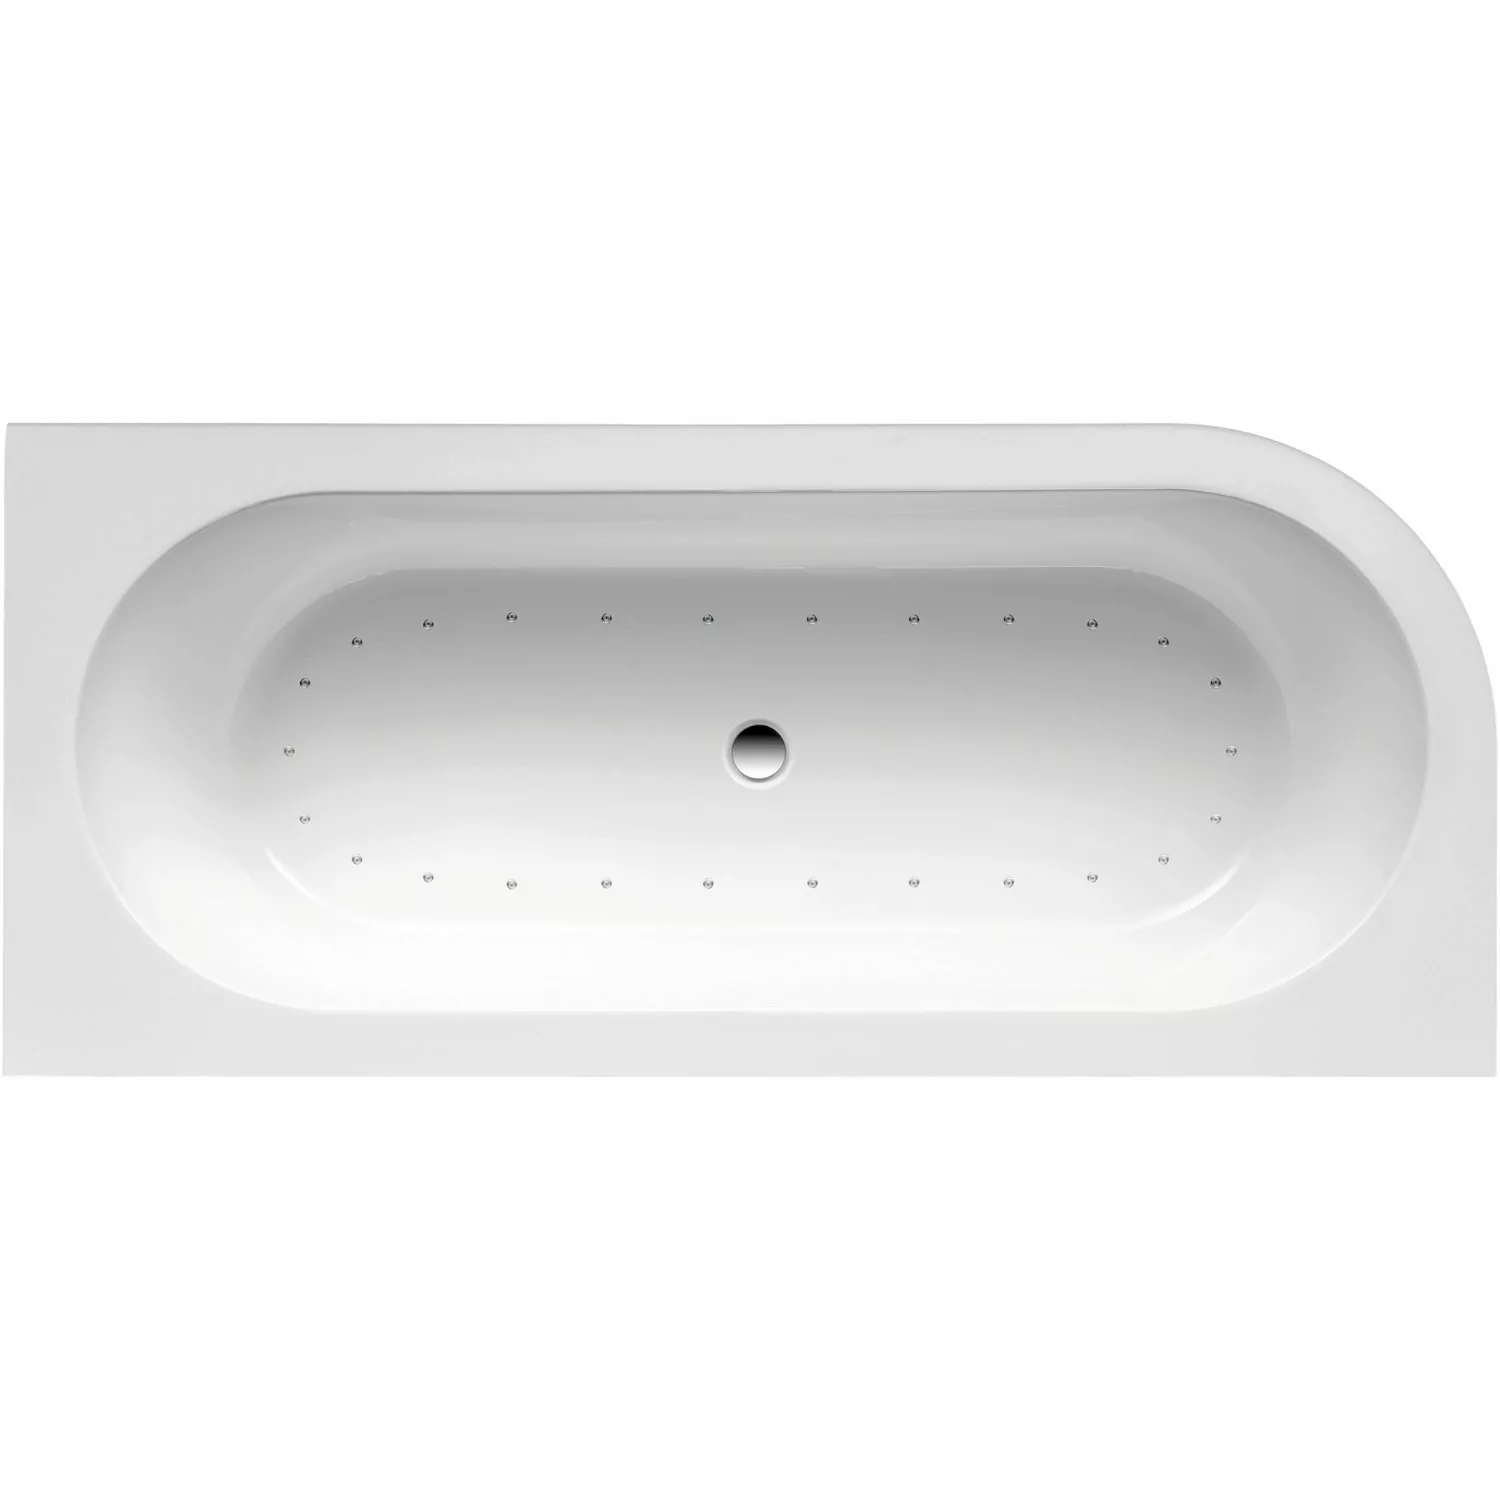 Ottofond Whirlpool Links Modena Corner Komfort-Silentsystem 178 cm x 78 cm günstig online kaufen